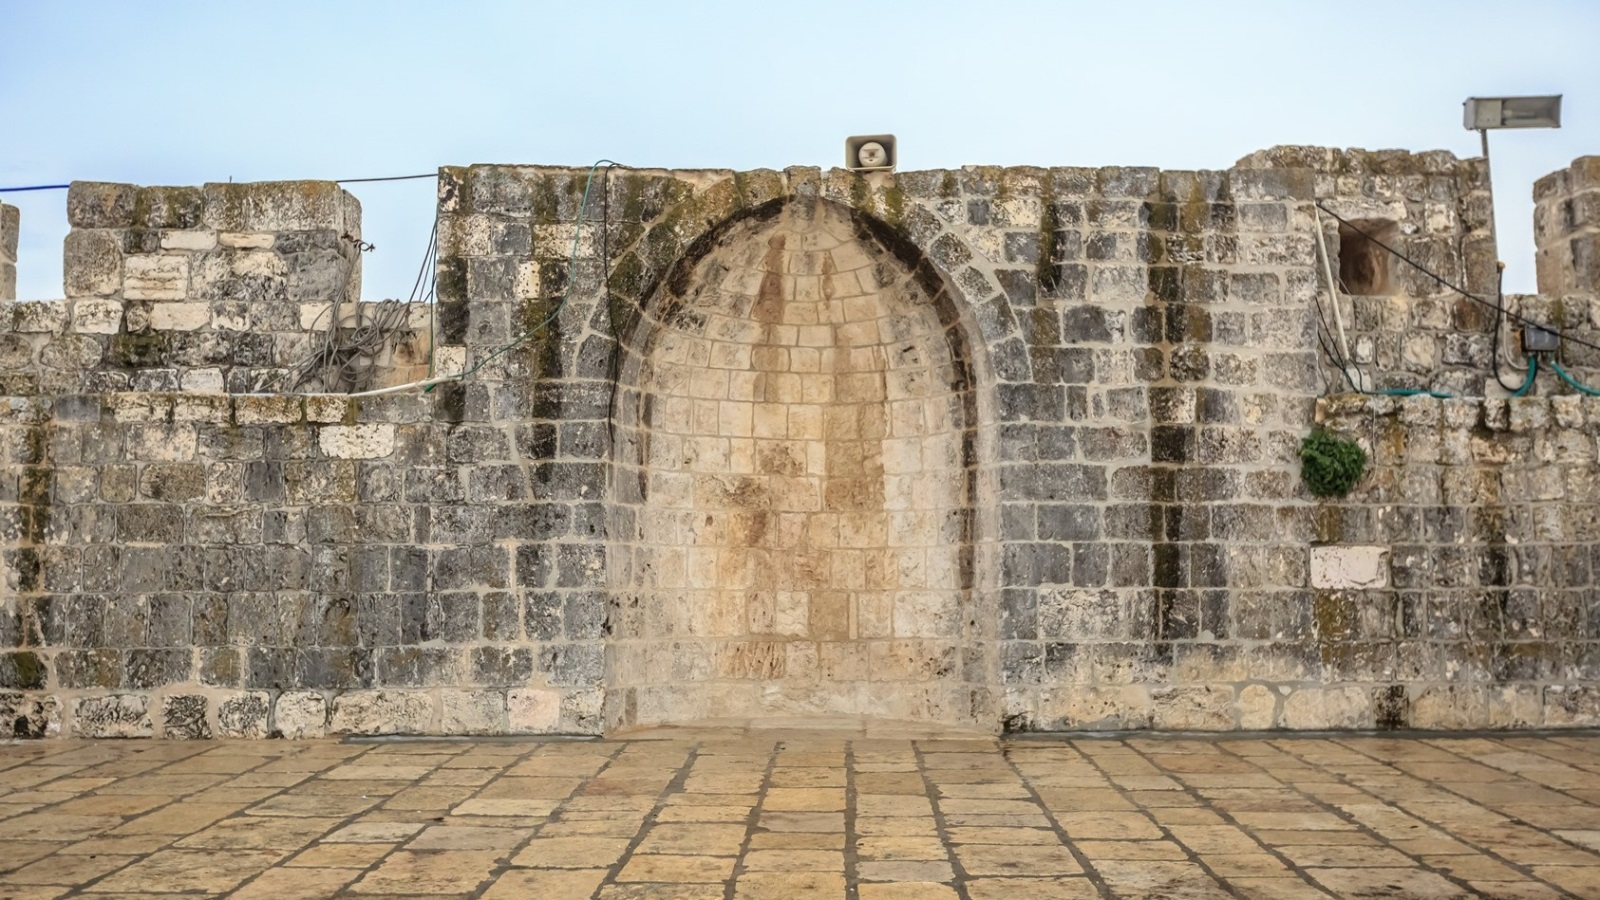 5609 -   محراب داوود، لا اثبات بين علاقة الاسم بالمسمى، بني عام 1296م يقع في السور الجنوبي للمسجد الأقصى شرقي الجامع القبلي.